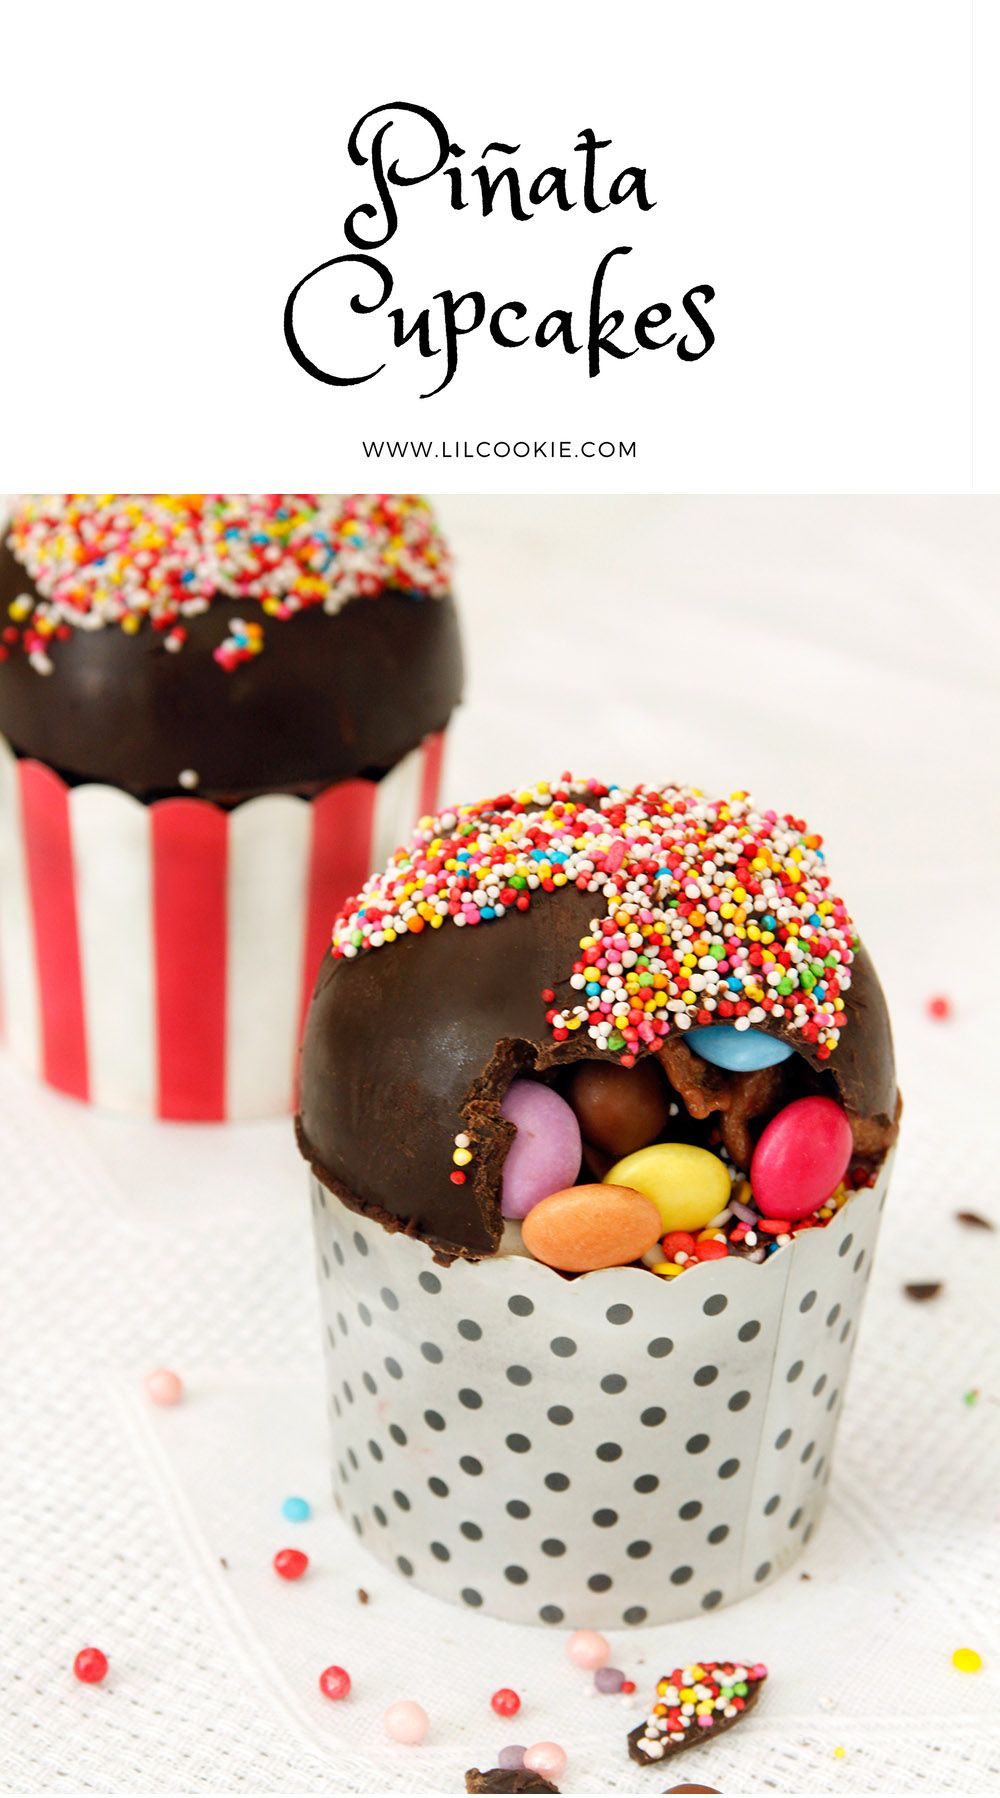 Pinata Cupcakes #birthday #recipe #chocolate #pinata #cupcakes #cake 